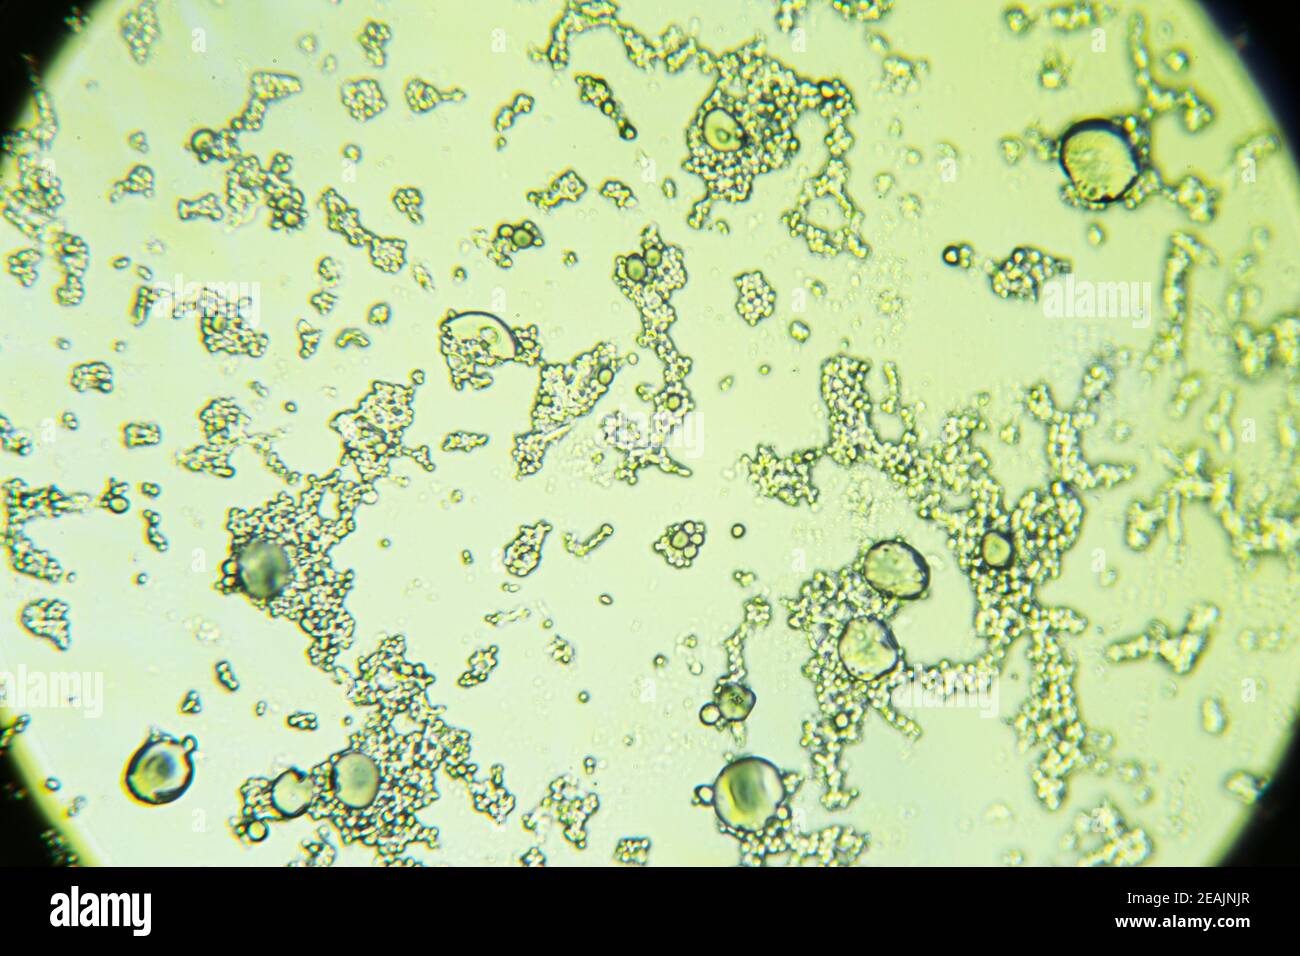 Schimmelsporen unter dem Lichtmikroskop, Orangenhaut-Form, Vergrößerung 400- fach Stockfotografie - Alamy